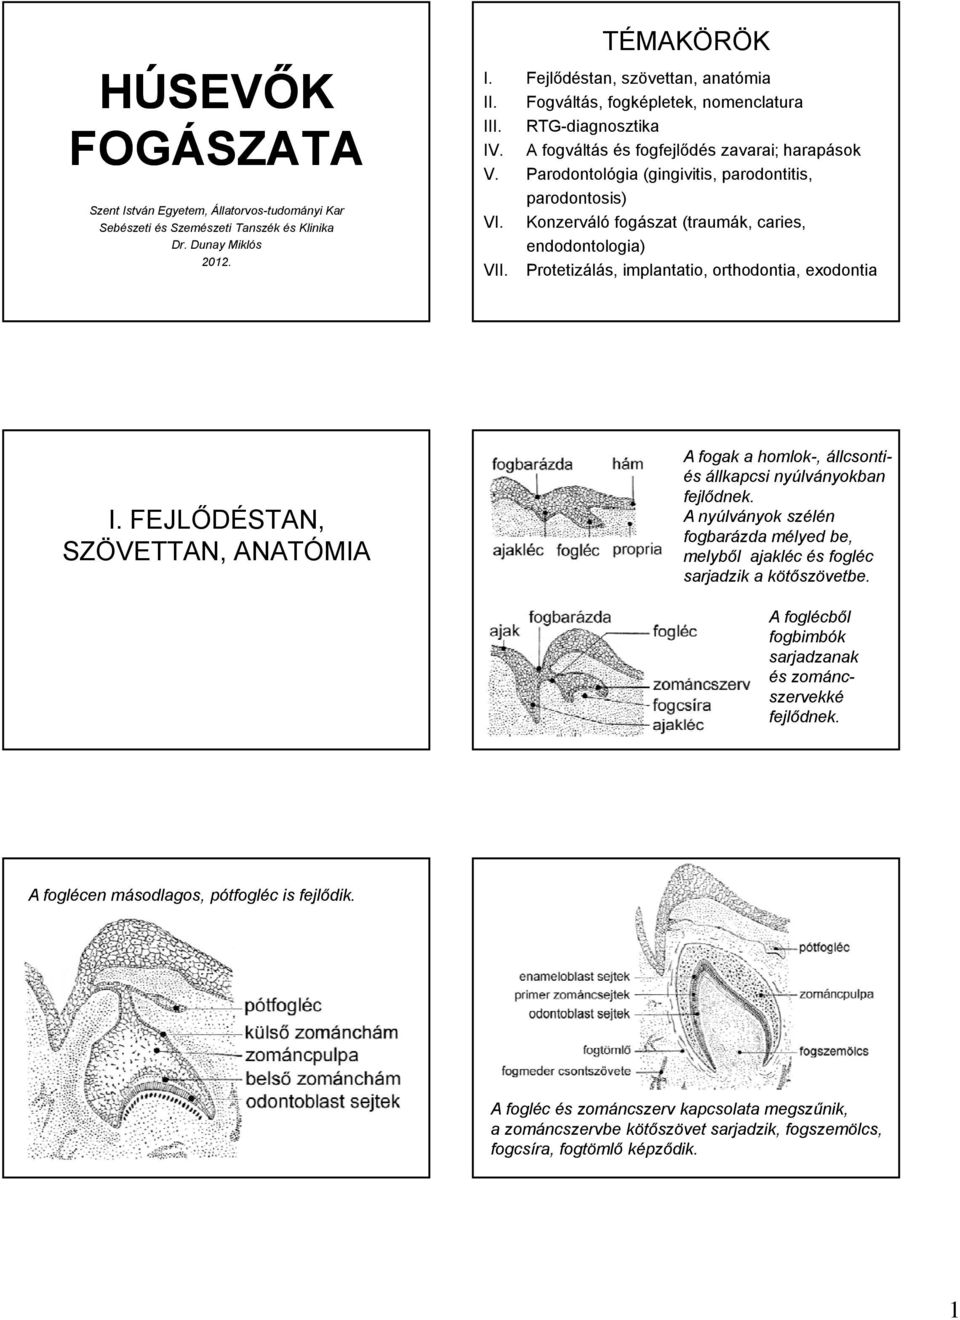 Konzerváló fogászat (traumák, caries, endodontologia) VII. Protetizálás, implantatio, orthodontia, exodontia I.